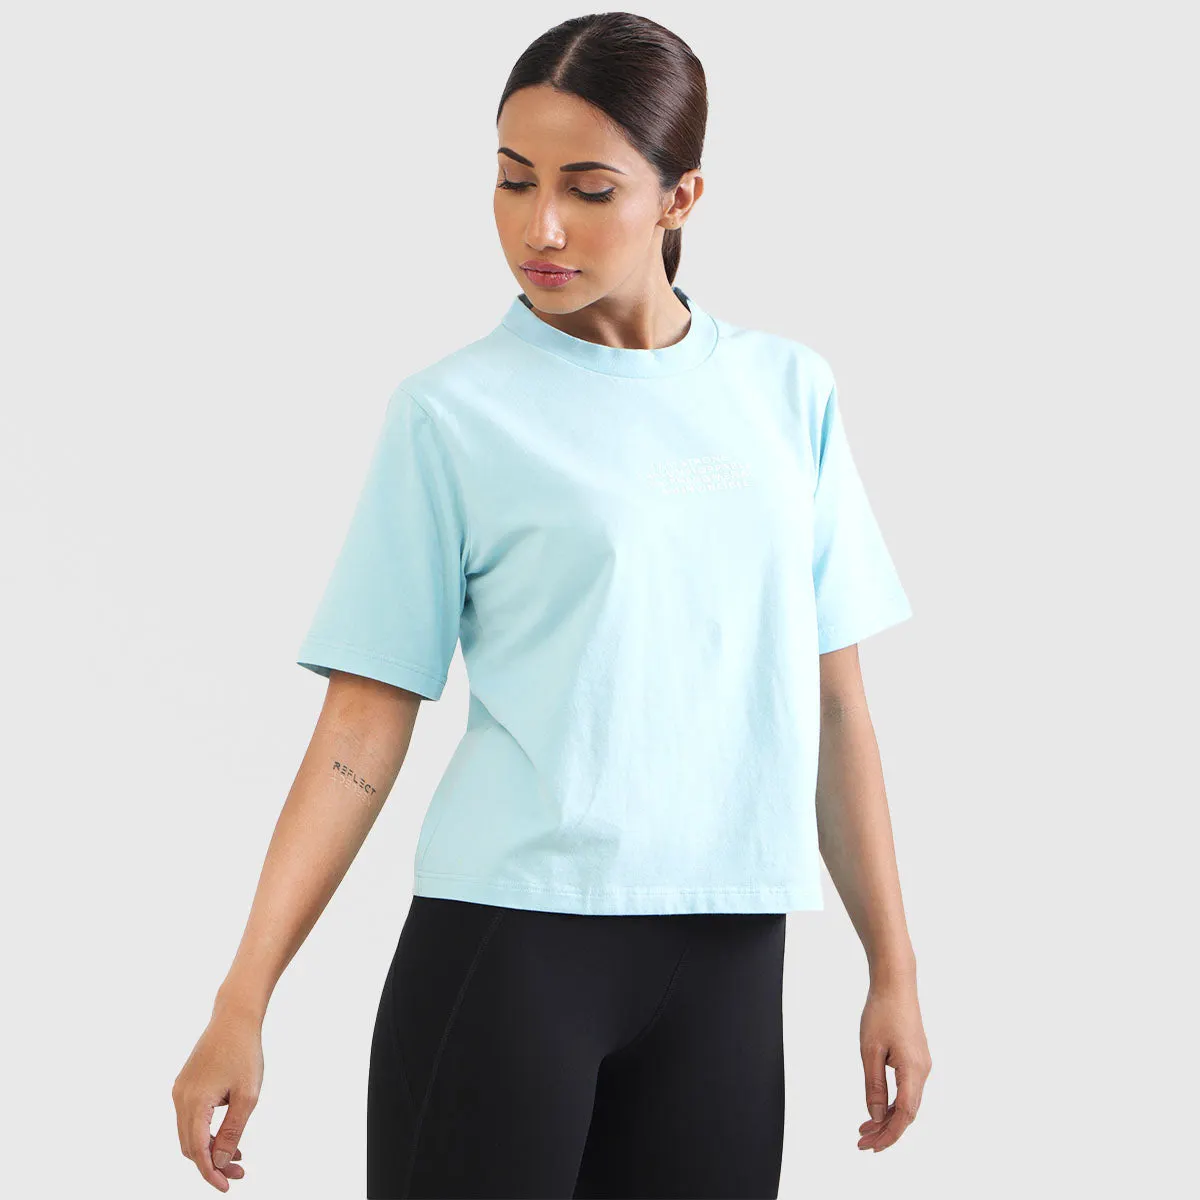 부드럽고 편안한 여성 티셔츠 여성용 도매 가격 통기성 의류 OEM 여성 탑